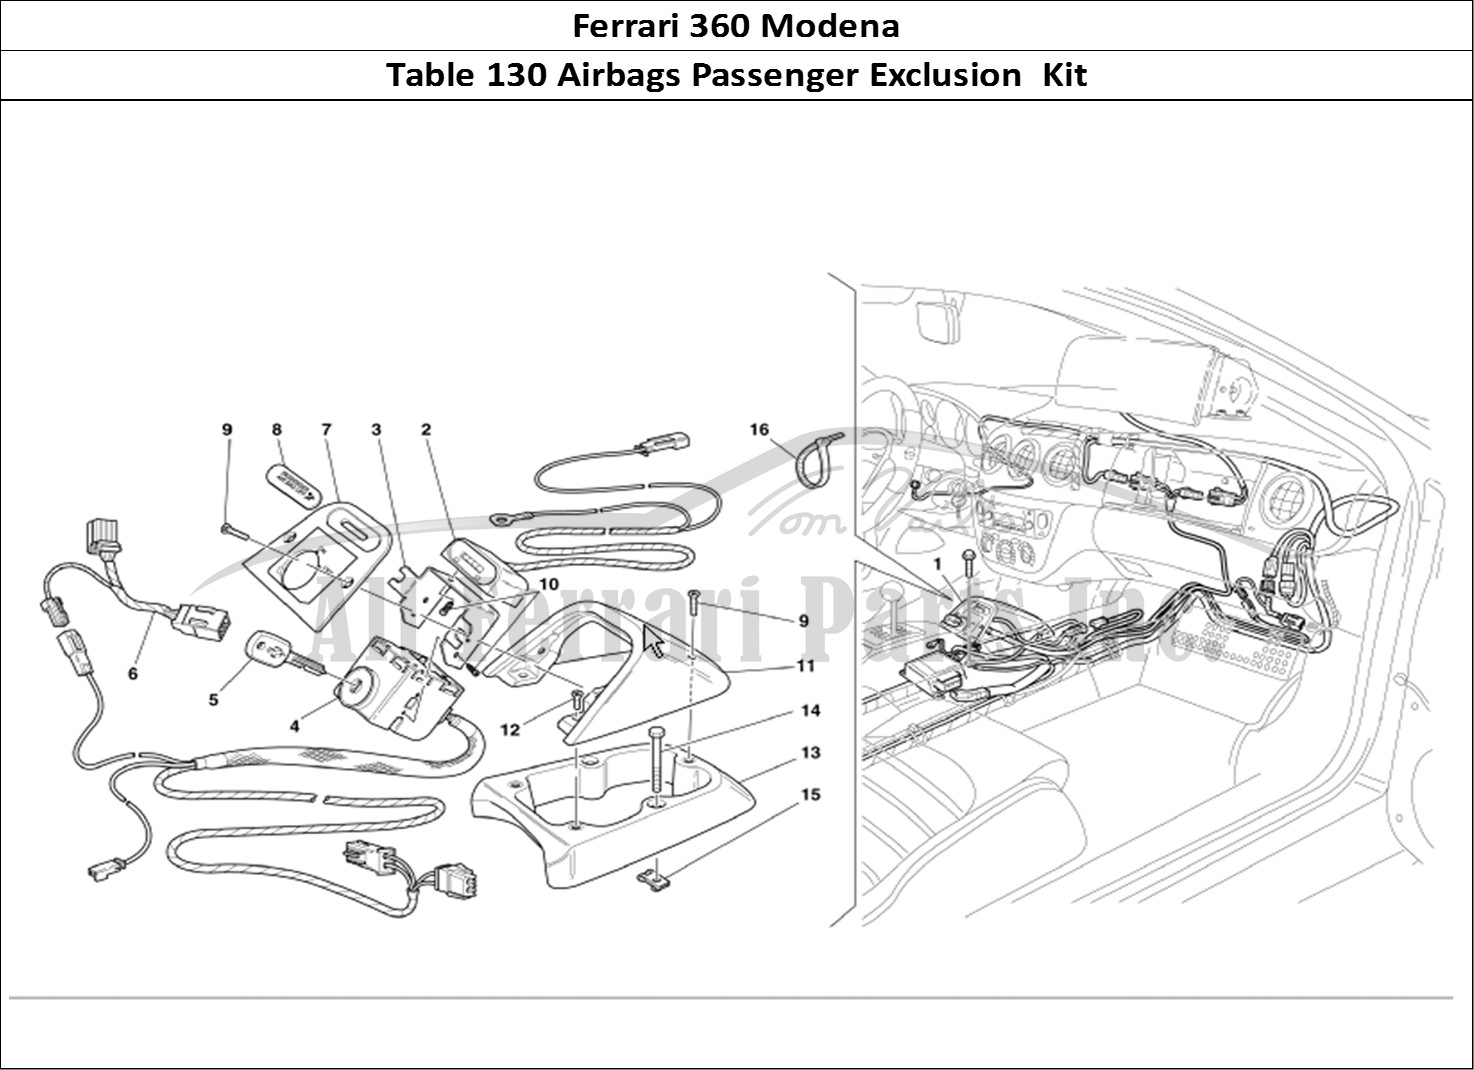 Ferrari Parts Ferrari 360 Modena Page 130 Passenger Air-Bag Exclusi